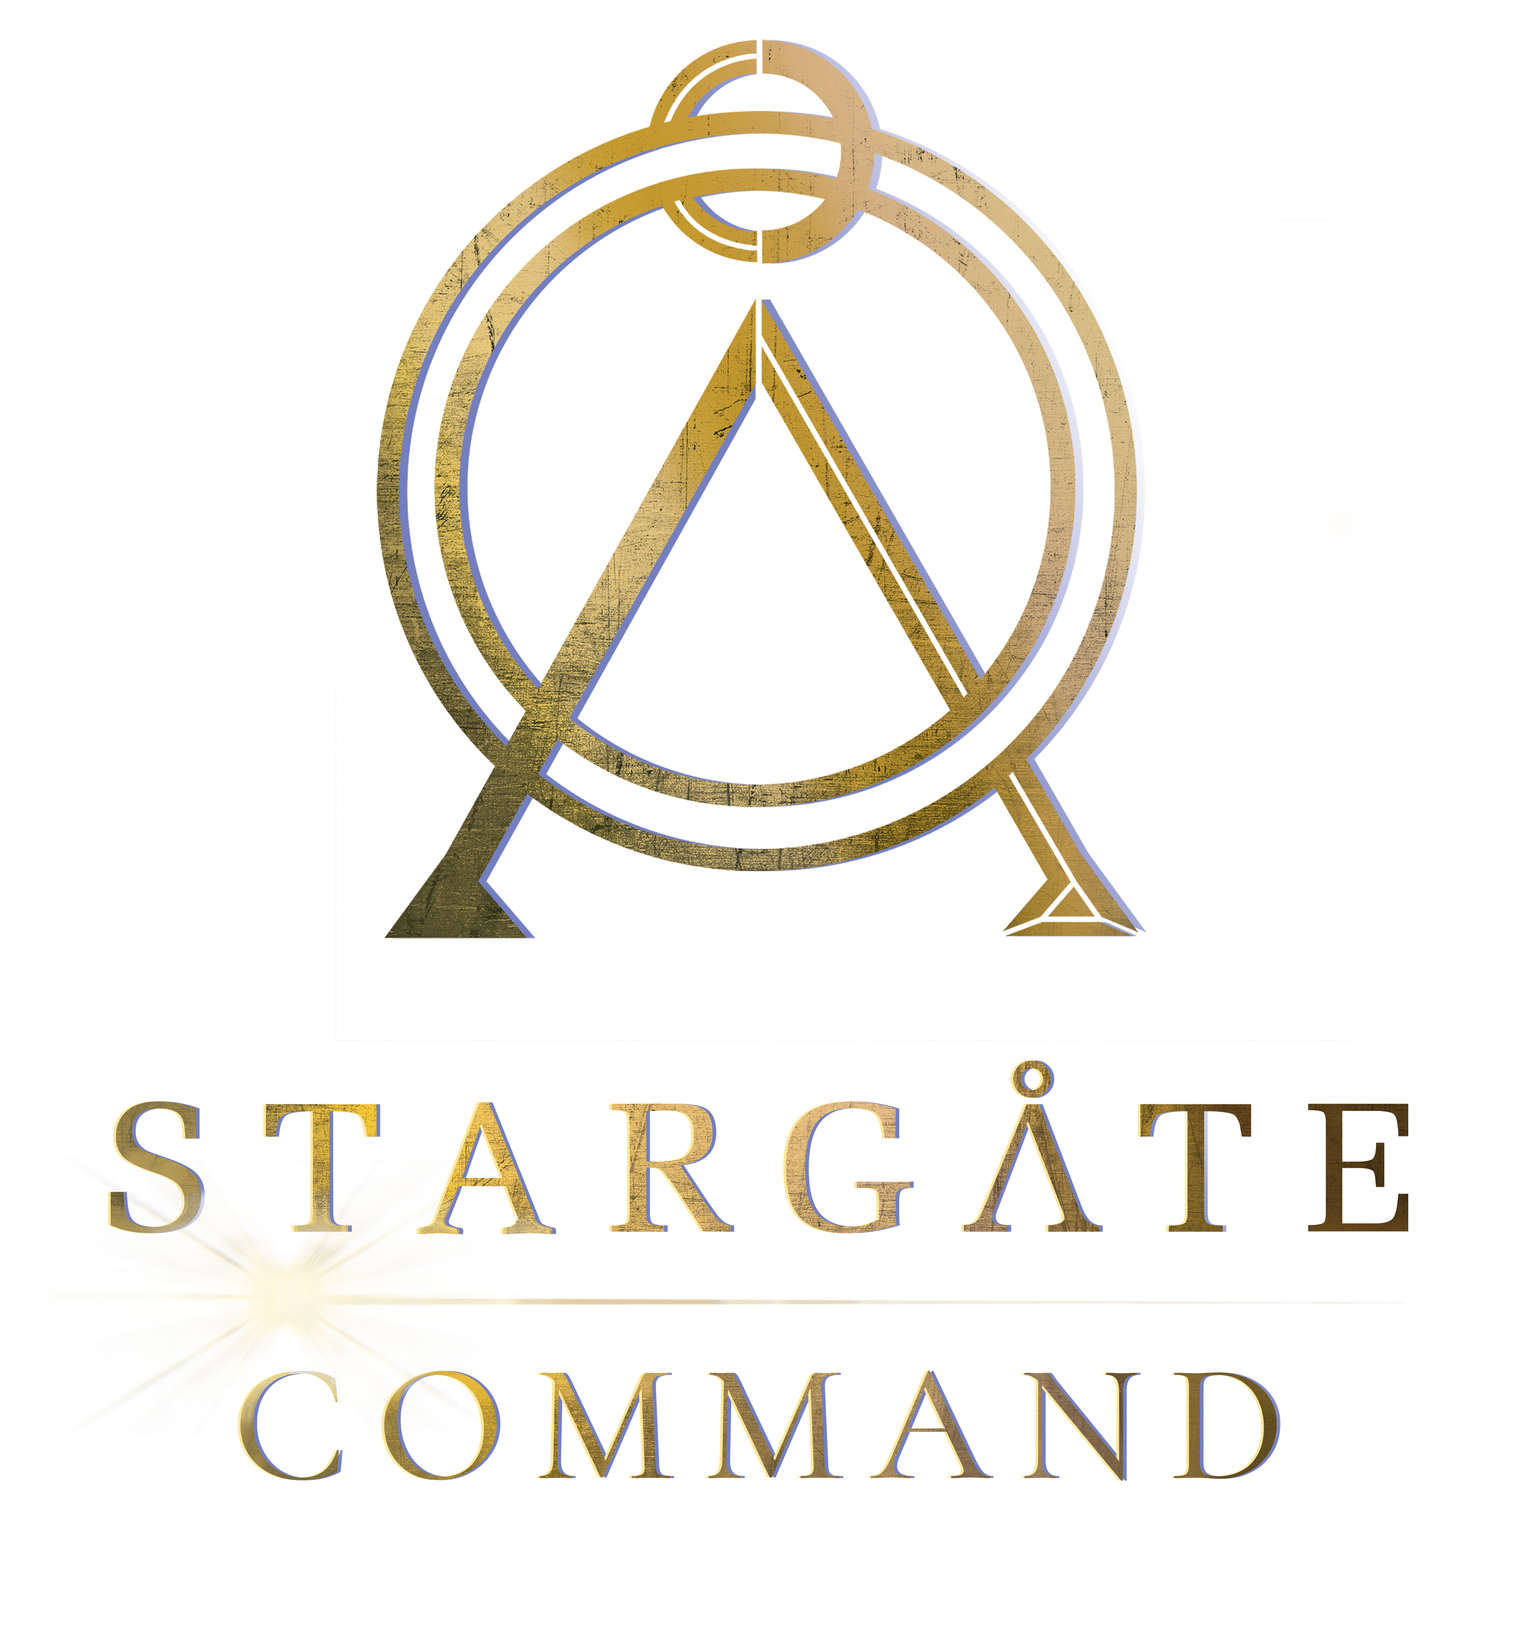 Stargate Command - Stargate Origins